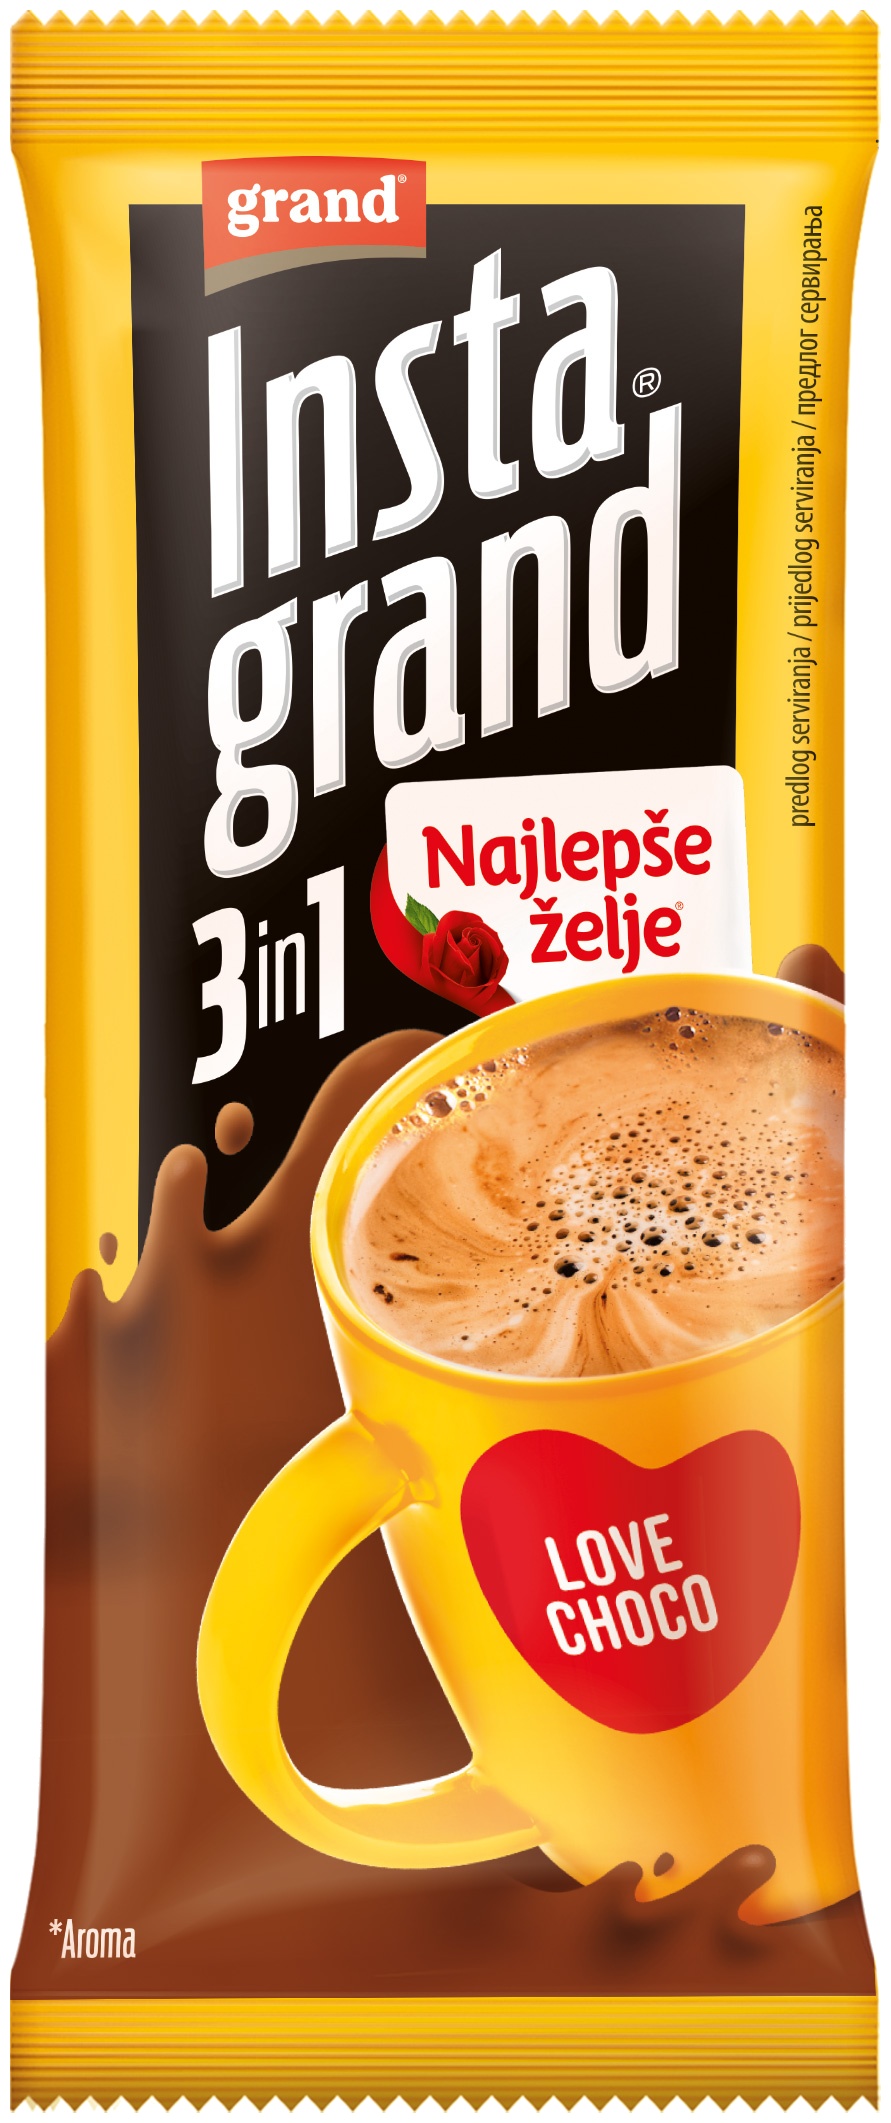 Slika za Kafa najlepše želje Insta grand 3kom